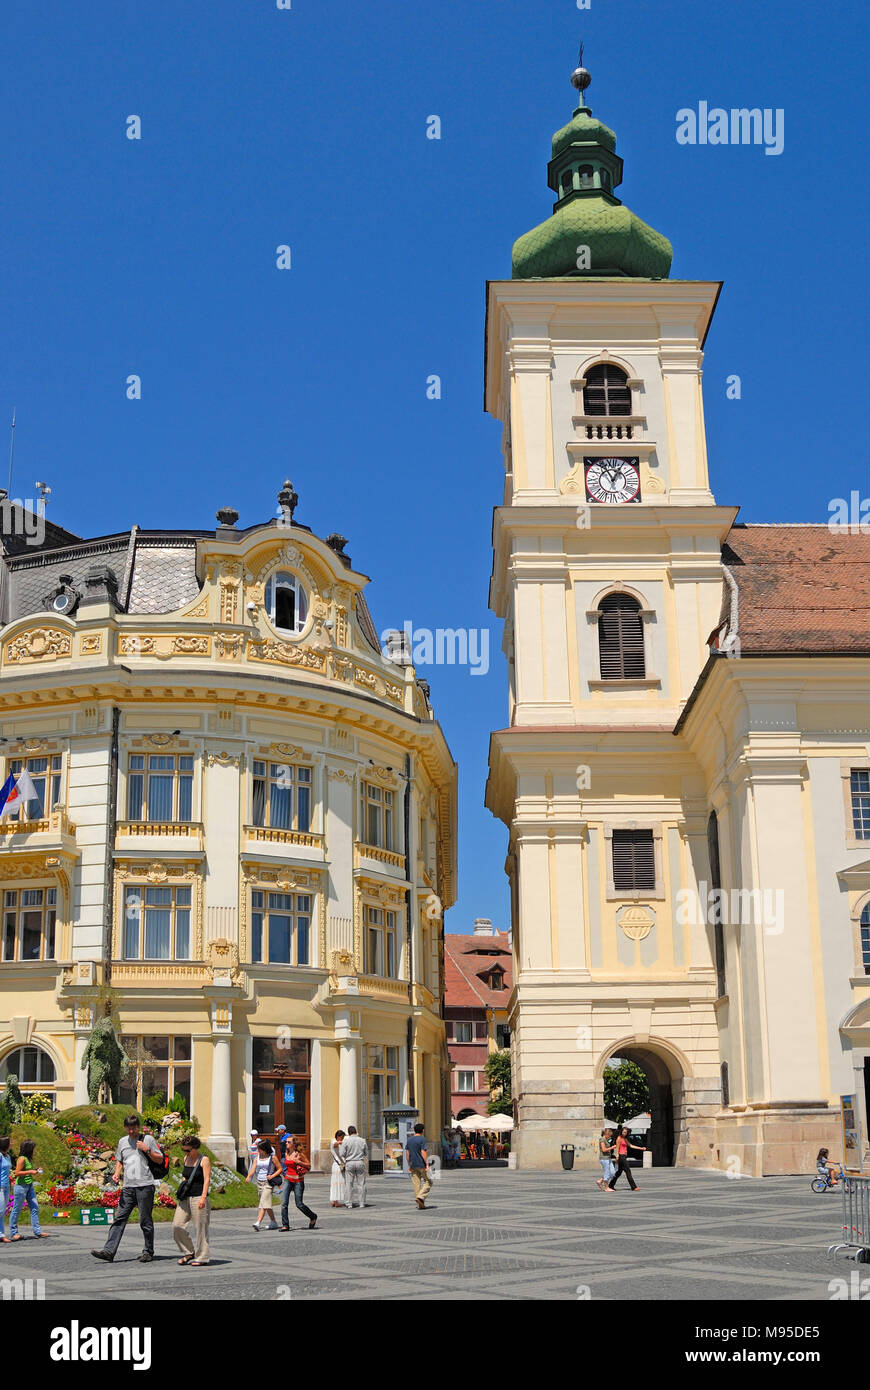 Sibiu, Transylvanie, Roumanie. Piata Mare (square) cathédrale catholique romaine (à droite) Informations touristiques sur bâtiment (à gauche) Banque D'Images